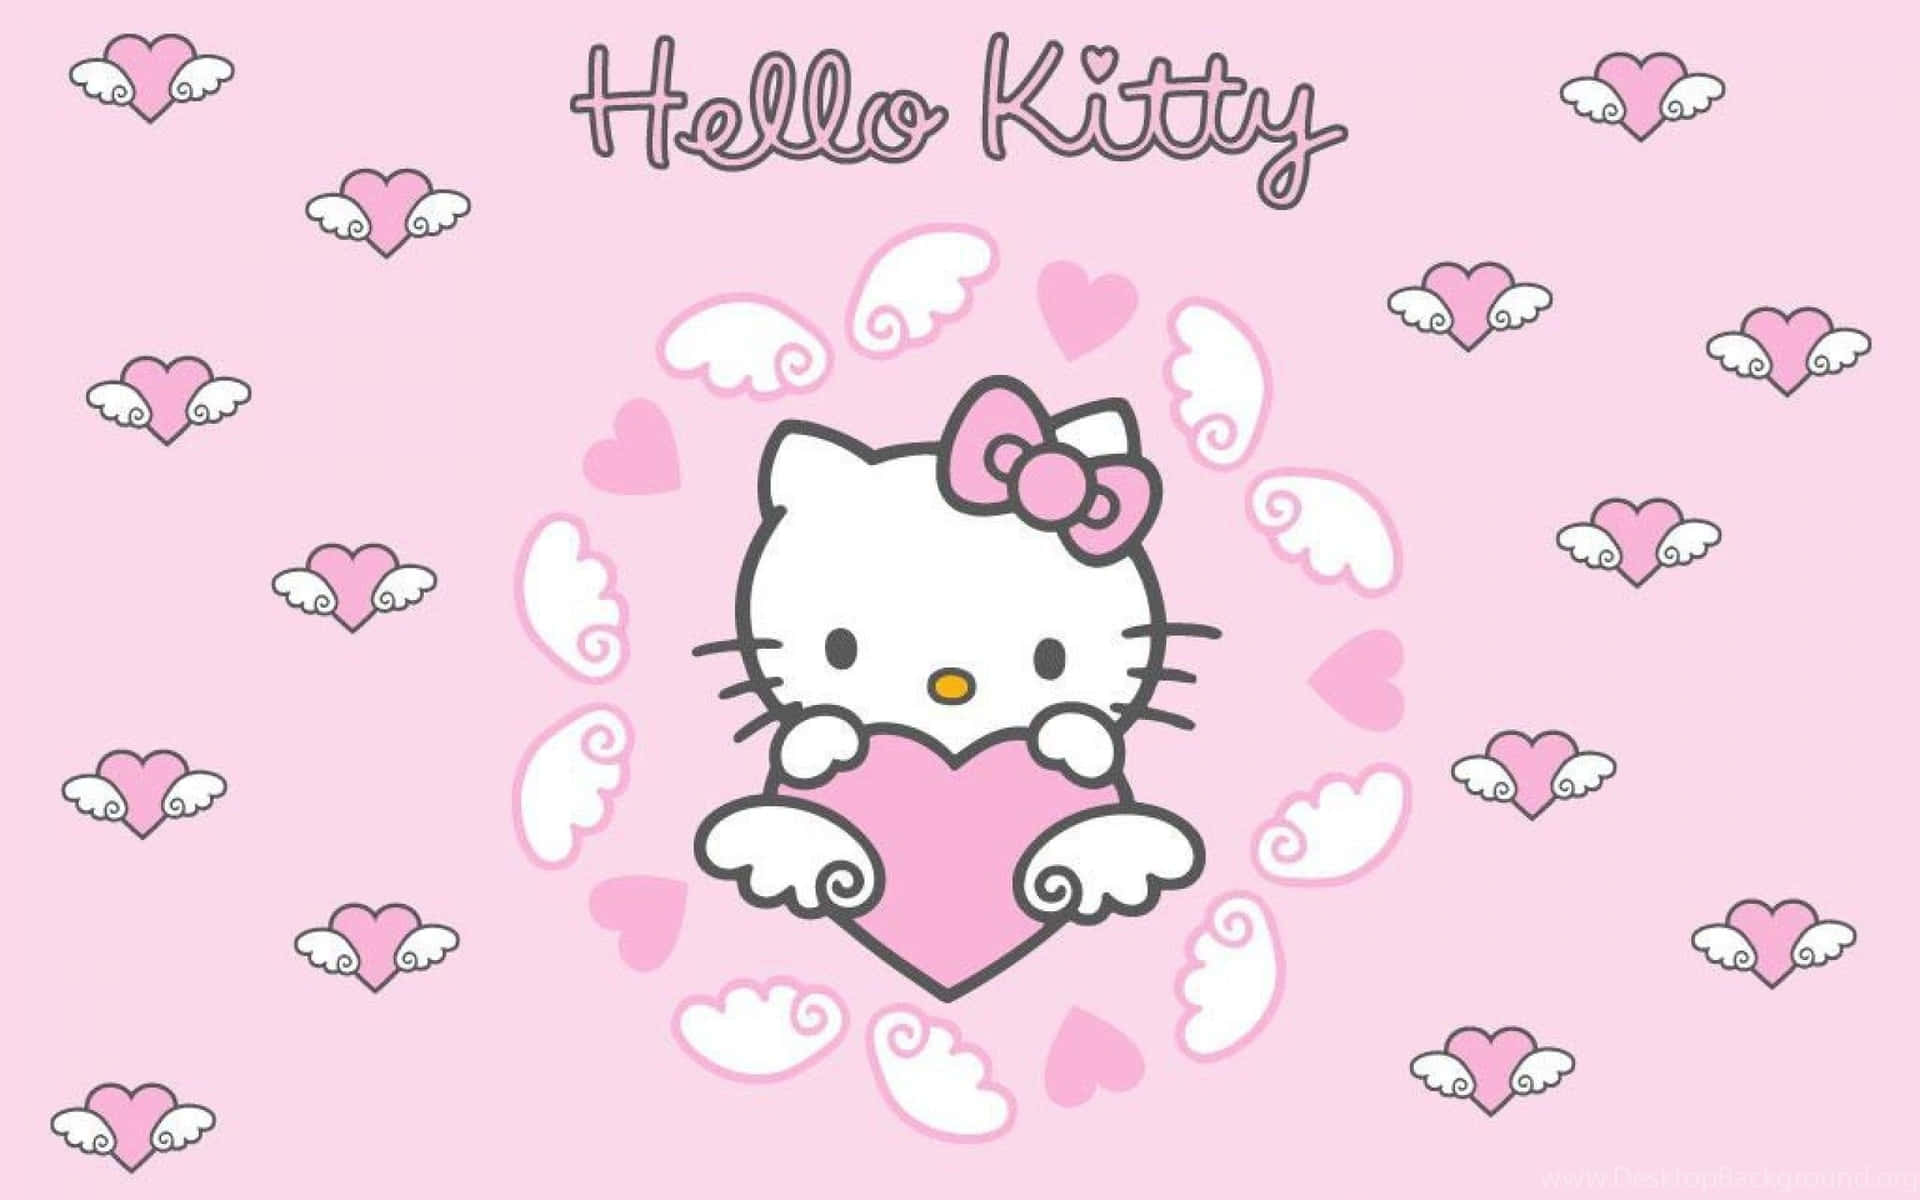 Preparatiad Affrontare La Giornata Con Un Pc Di Hello Kitty! Sfondo